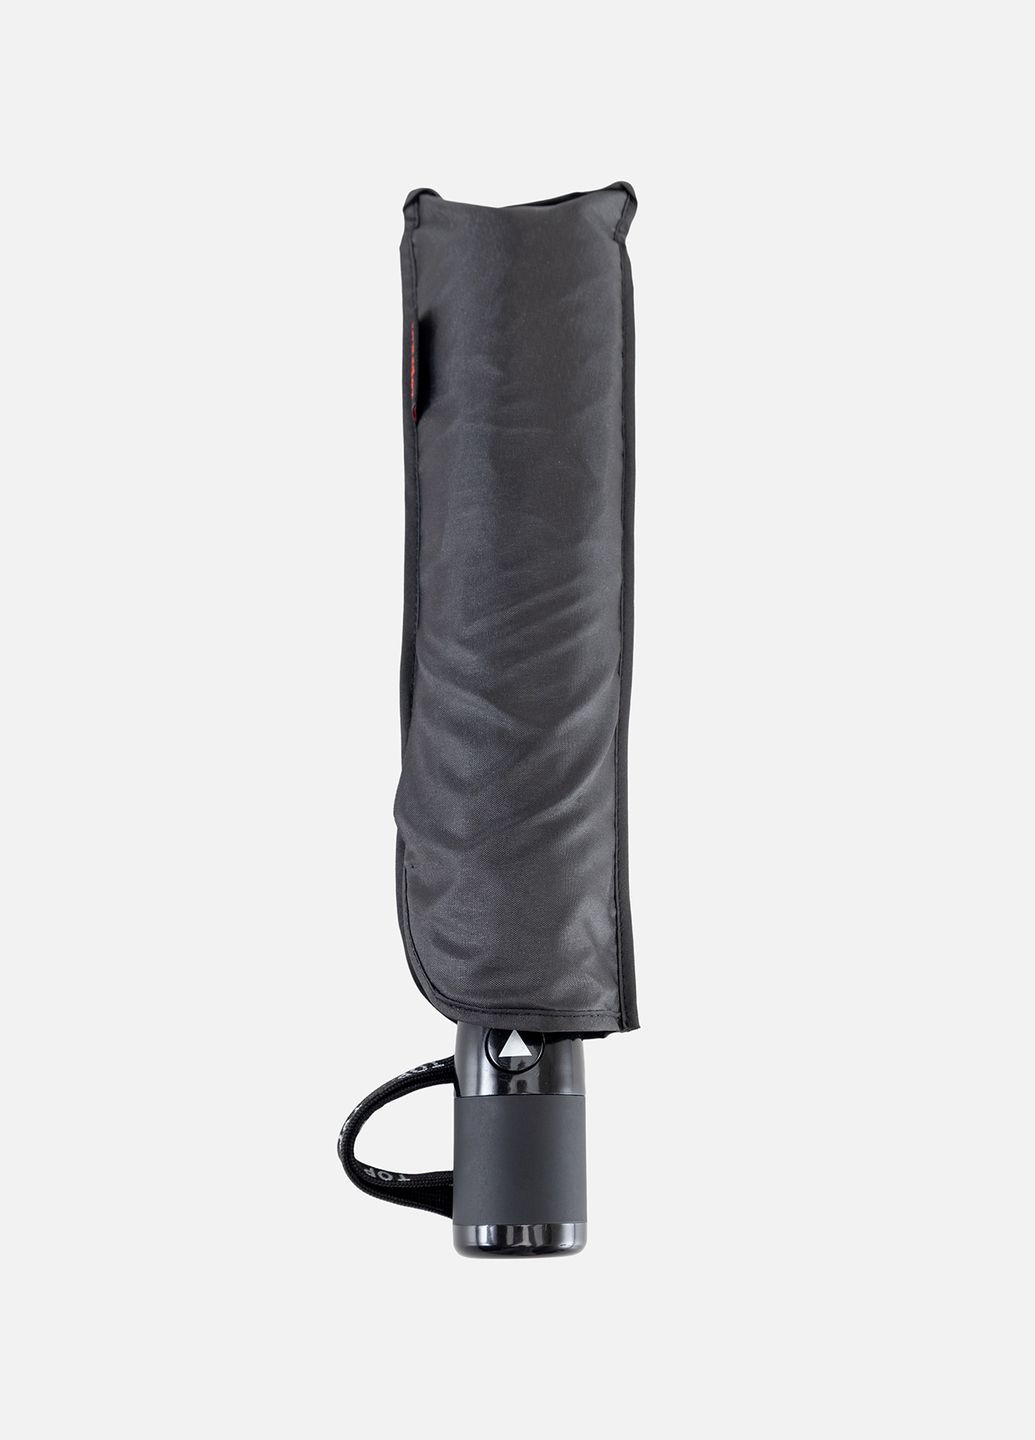 Мужской полуавтоматический зонтик цвет черный ЦБ-00190009 Toprain (289843250)